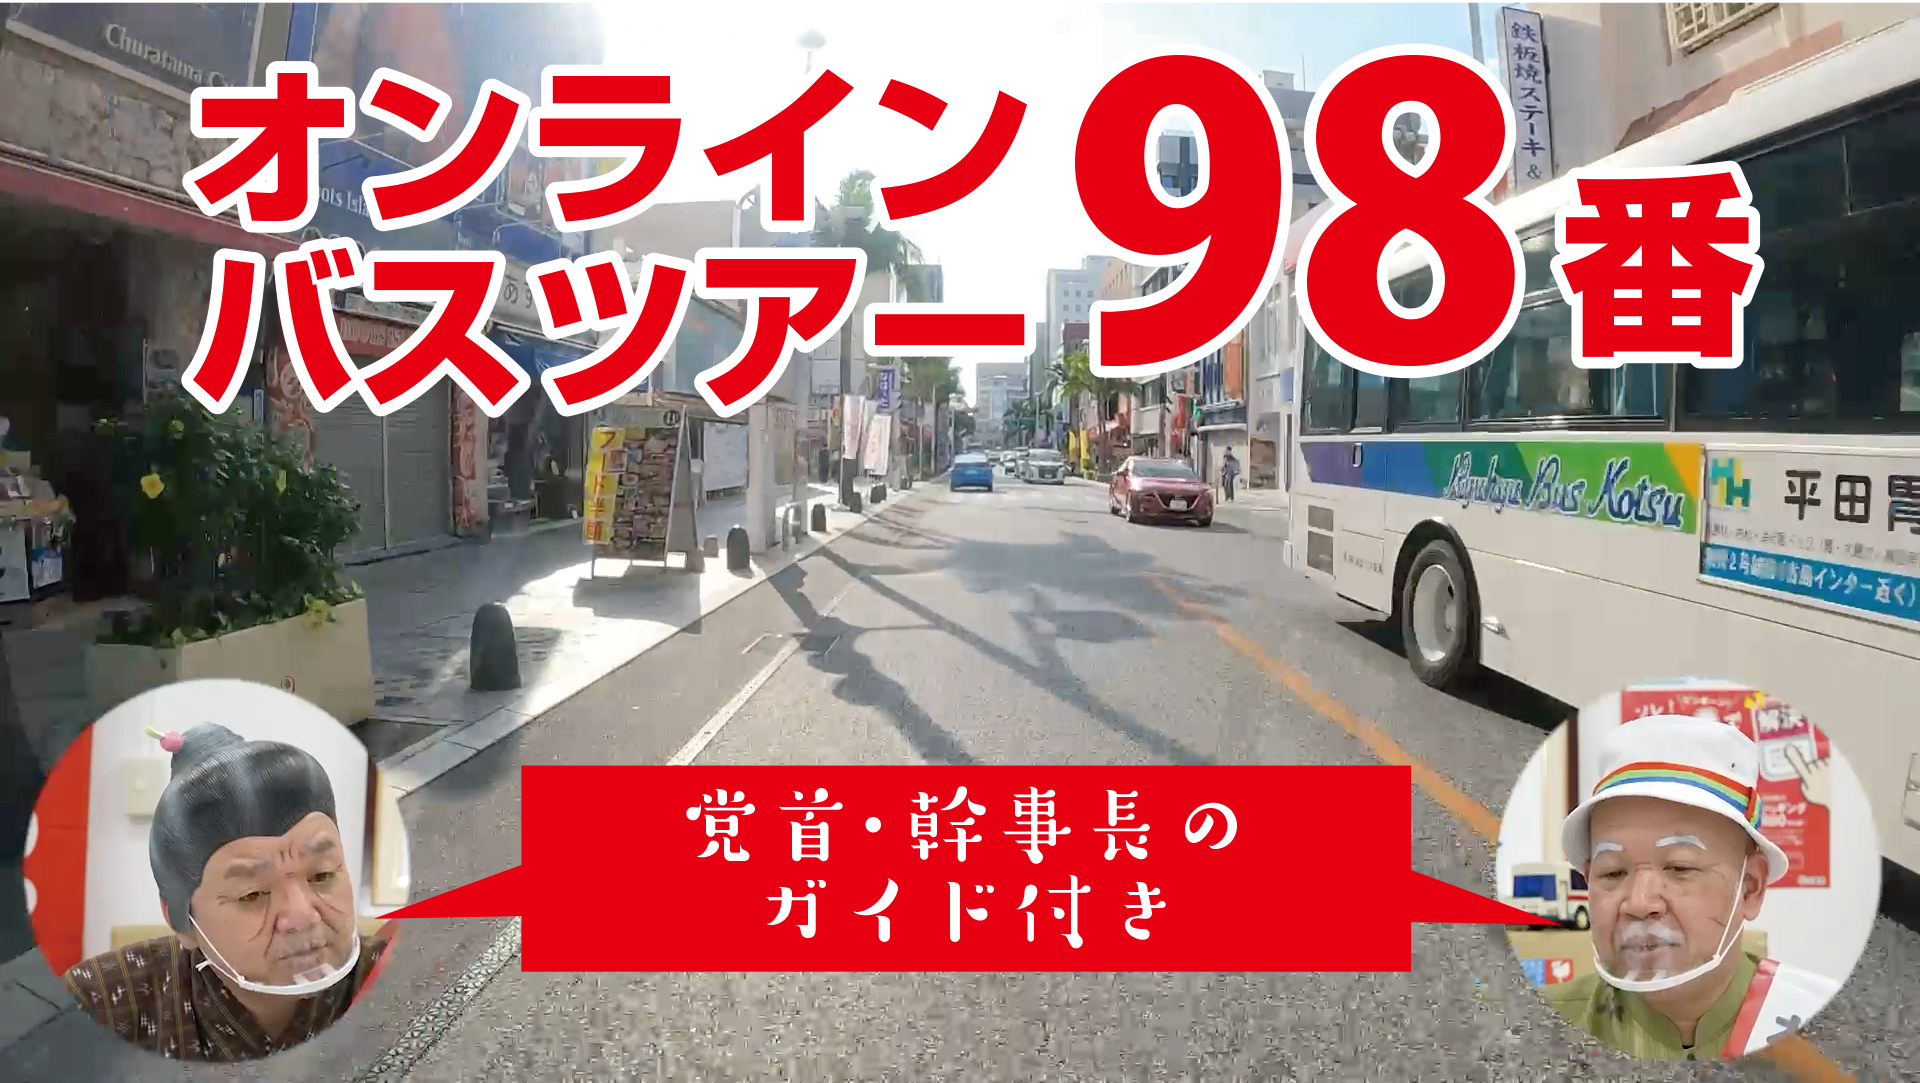 オンライン路線バスツアー「98番琉大線」を公開しました